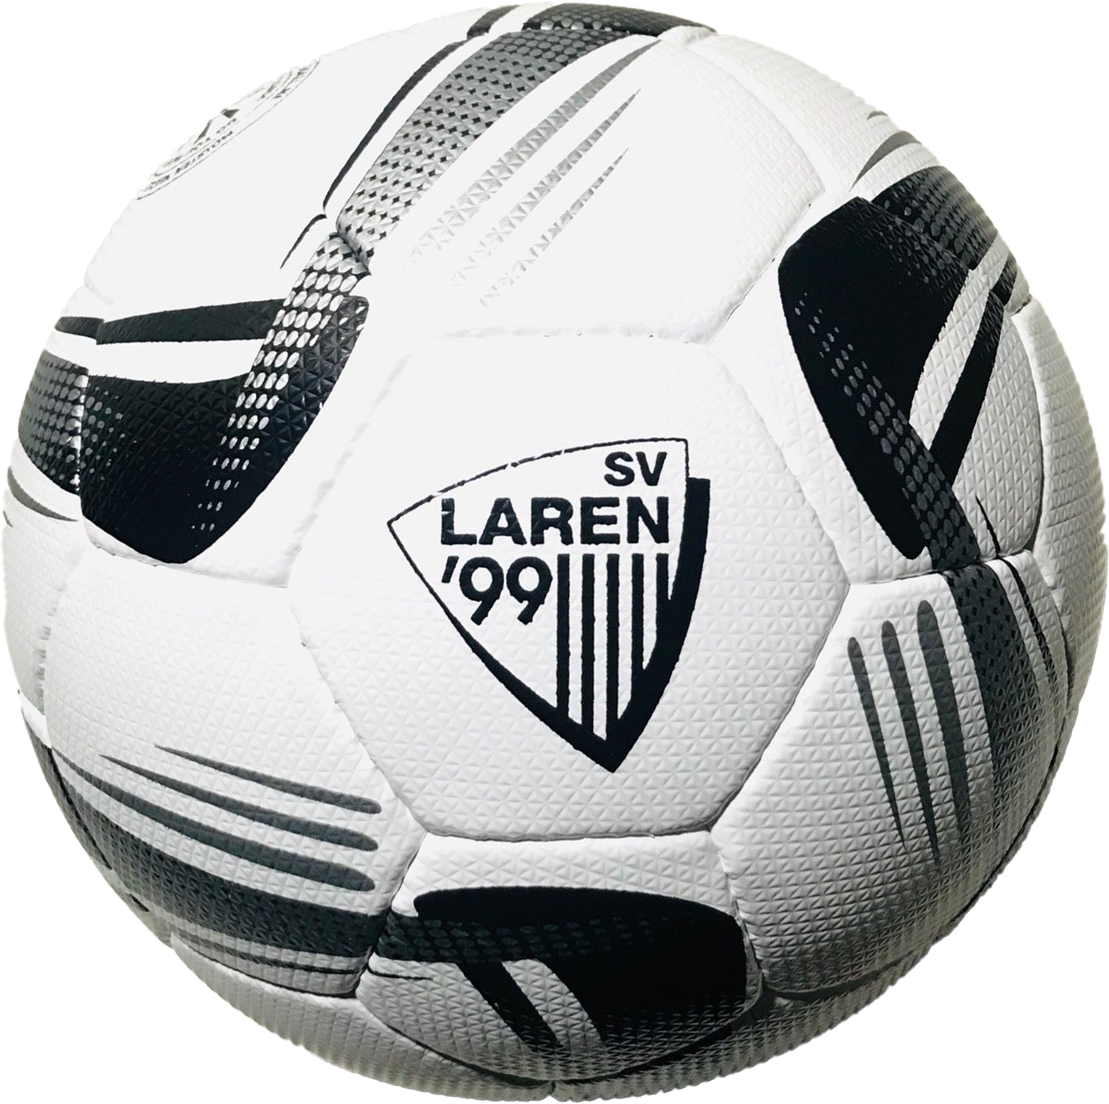 Balón de fútbol cosido a mano de tamaño estándar FIFA 5 - Foston - Sant Jaume de Frontanyà